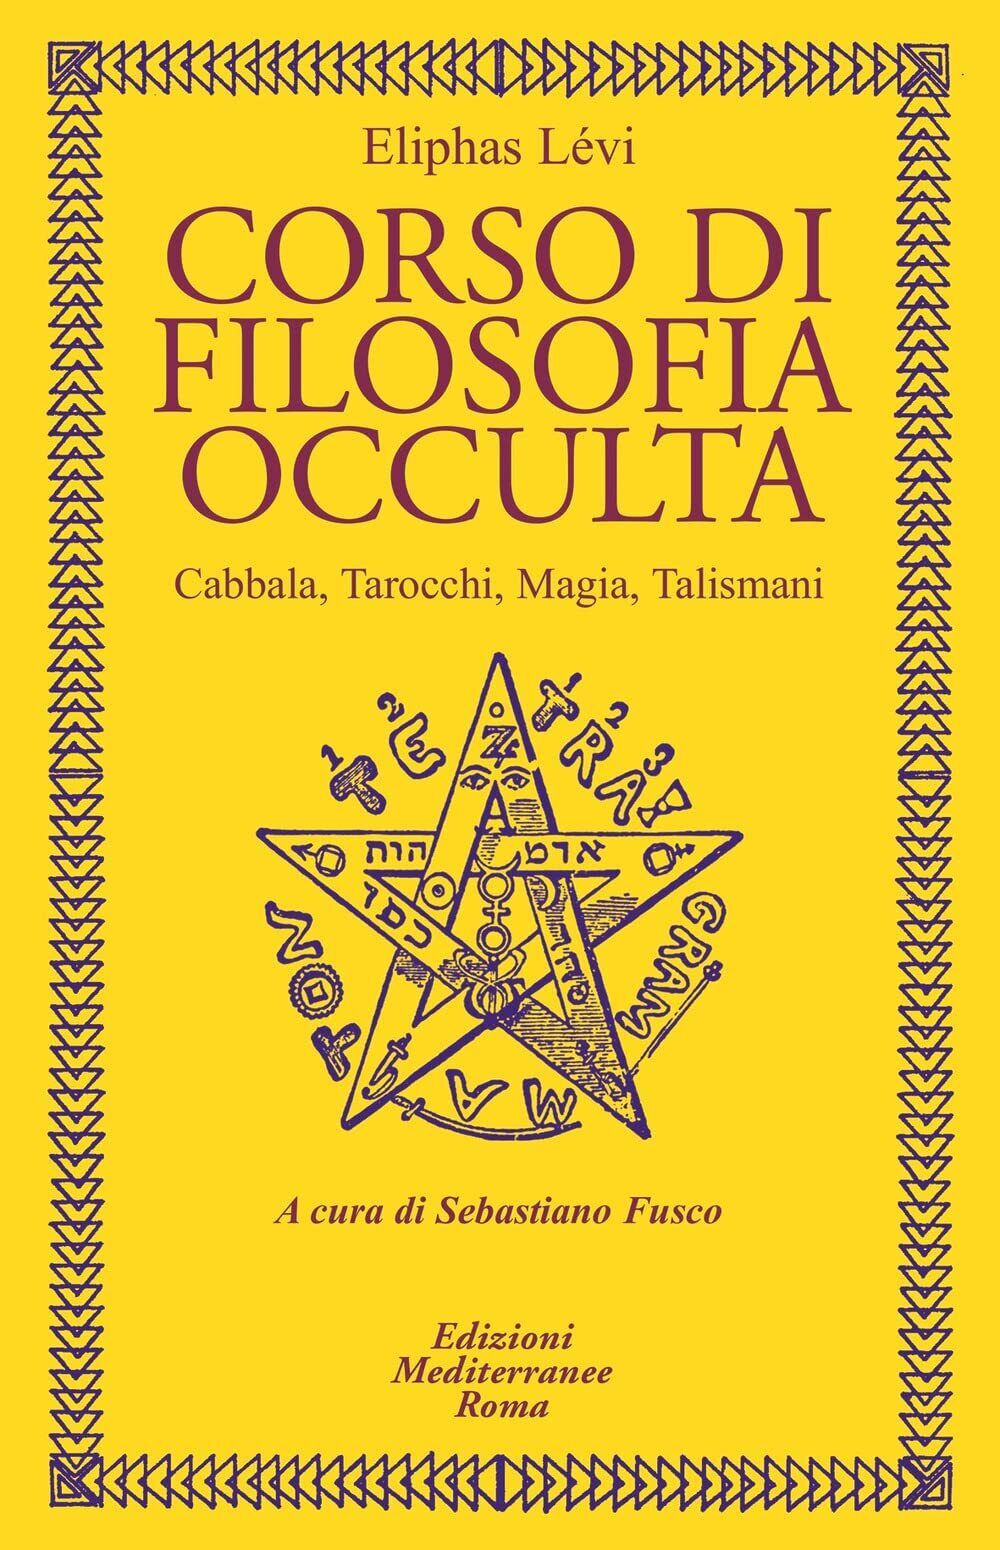 Corso di filosofia occulta. Cabbala, Tarocchi, magia, talismani - 2021 libro usato